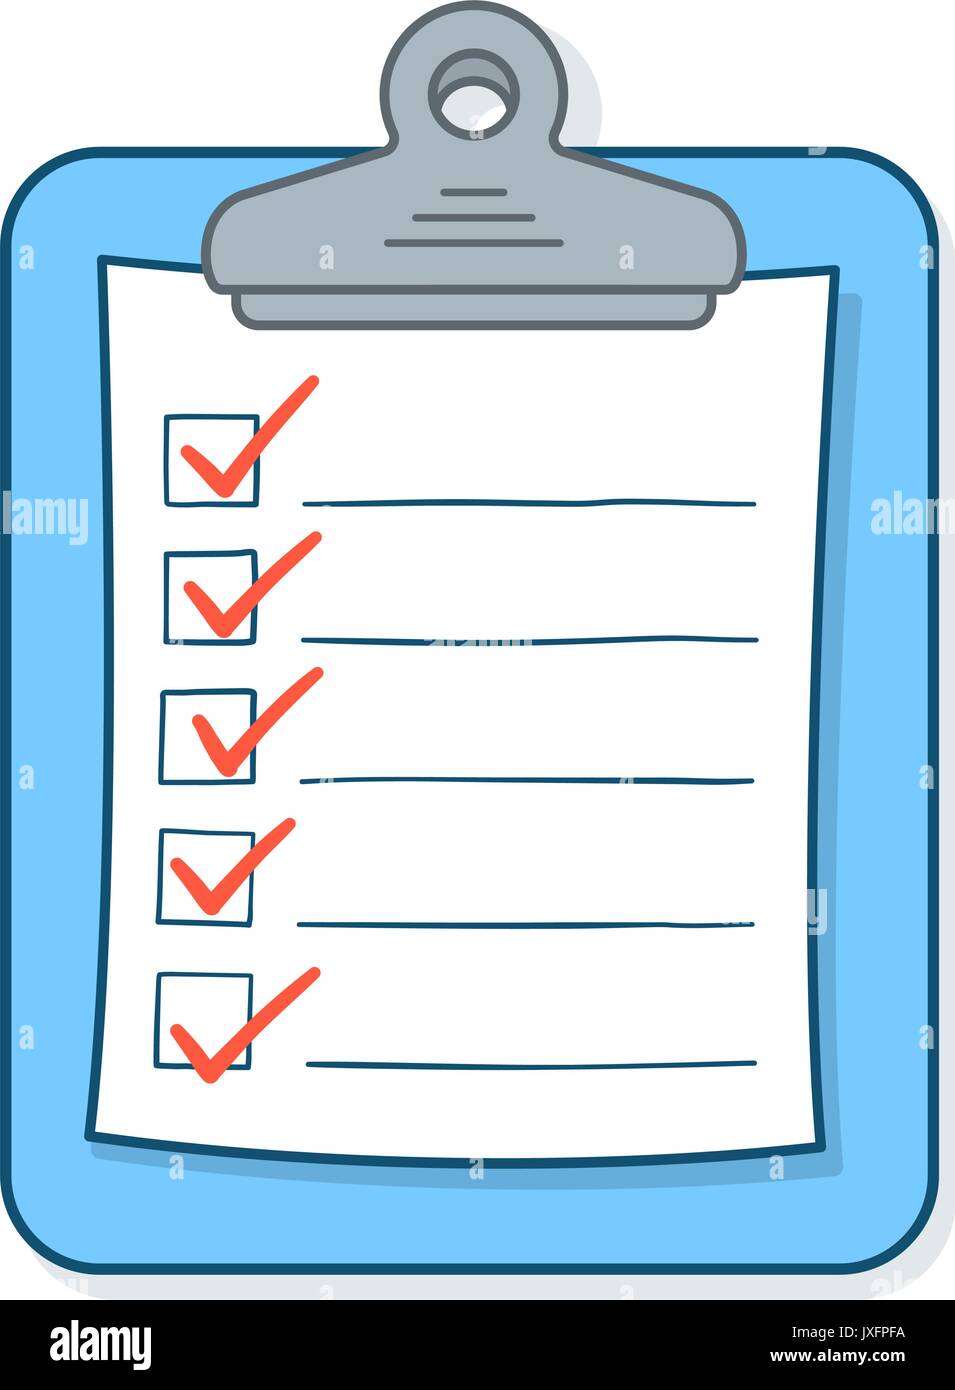 Checklist Cartoon Image